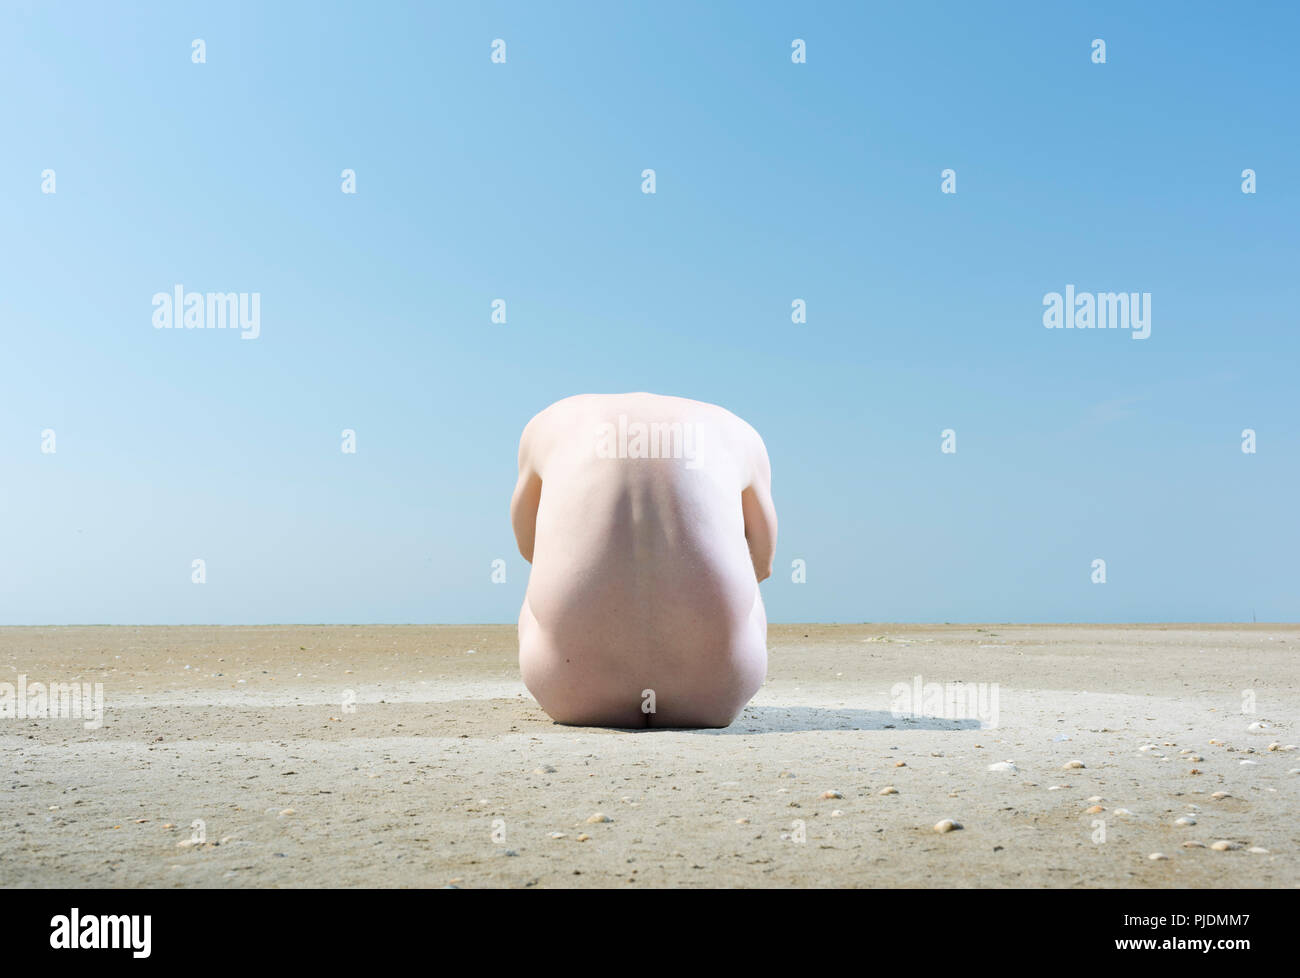 Nude man on sandbank Stock Photo